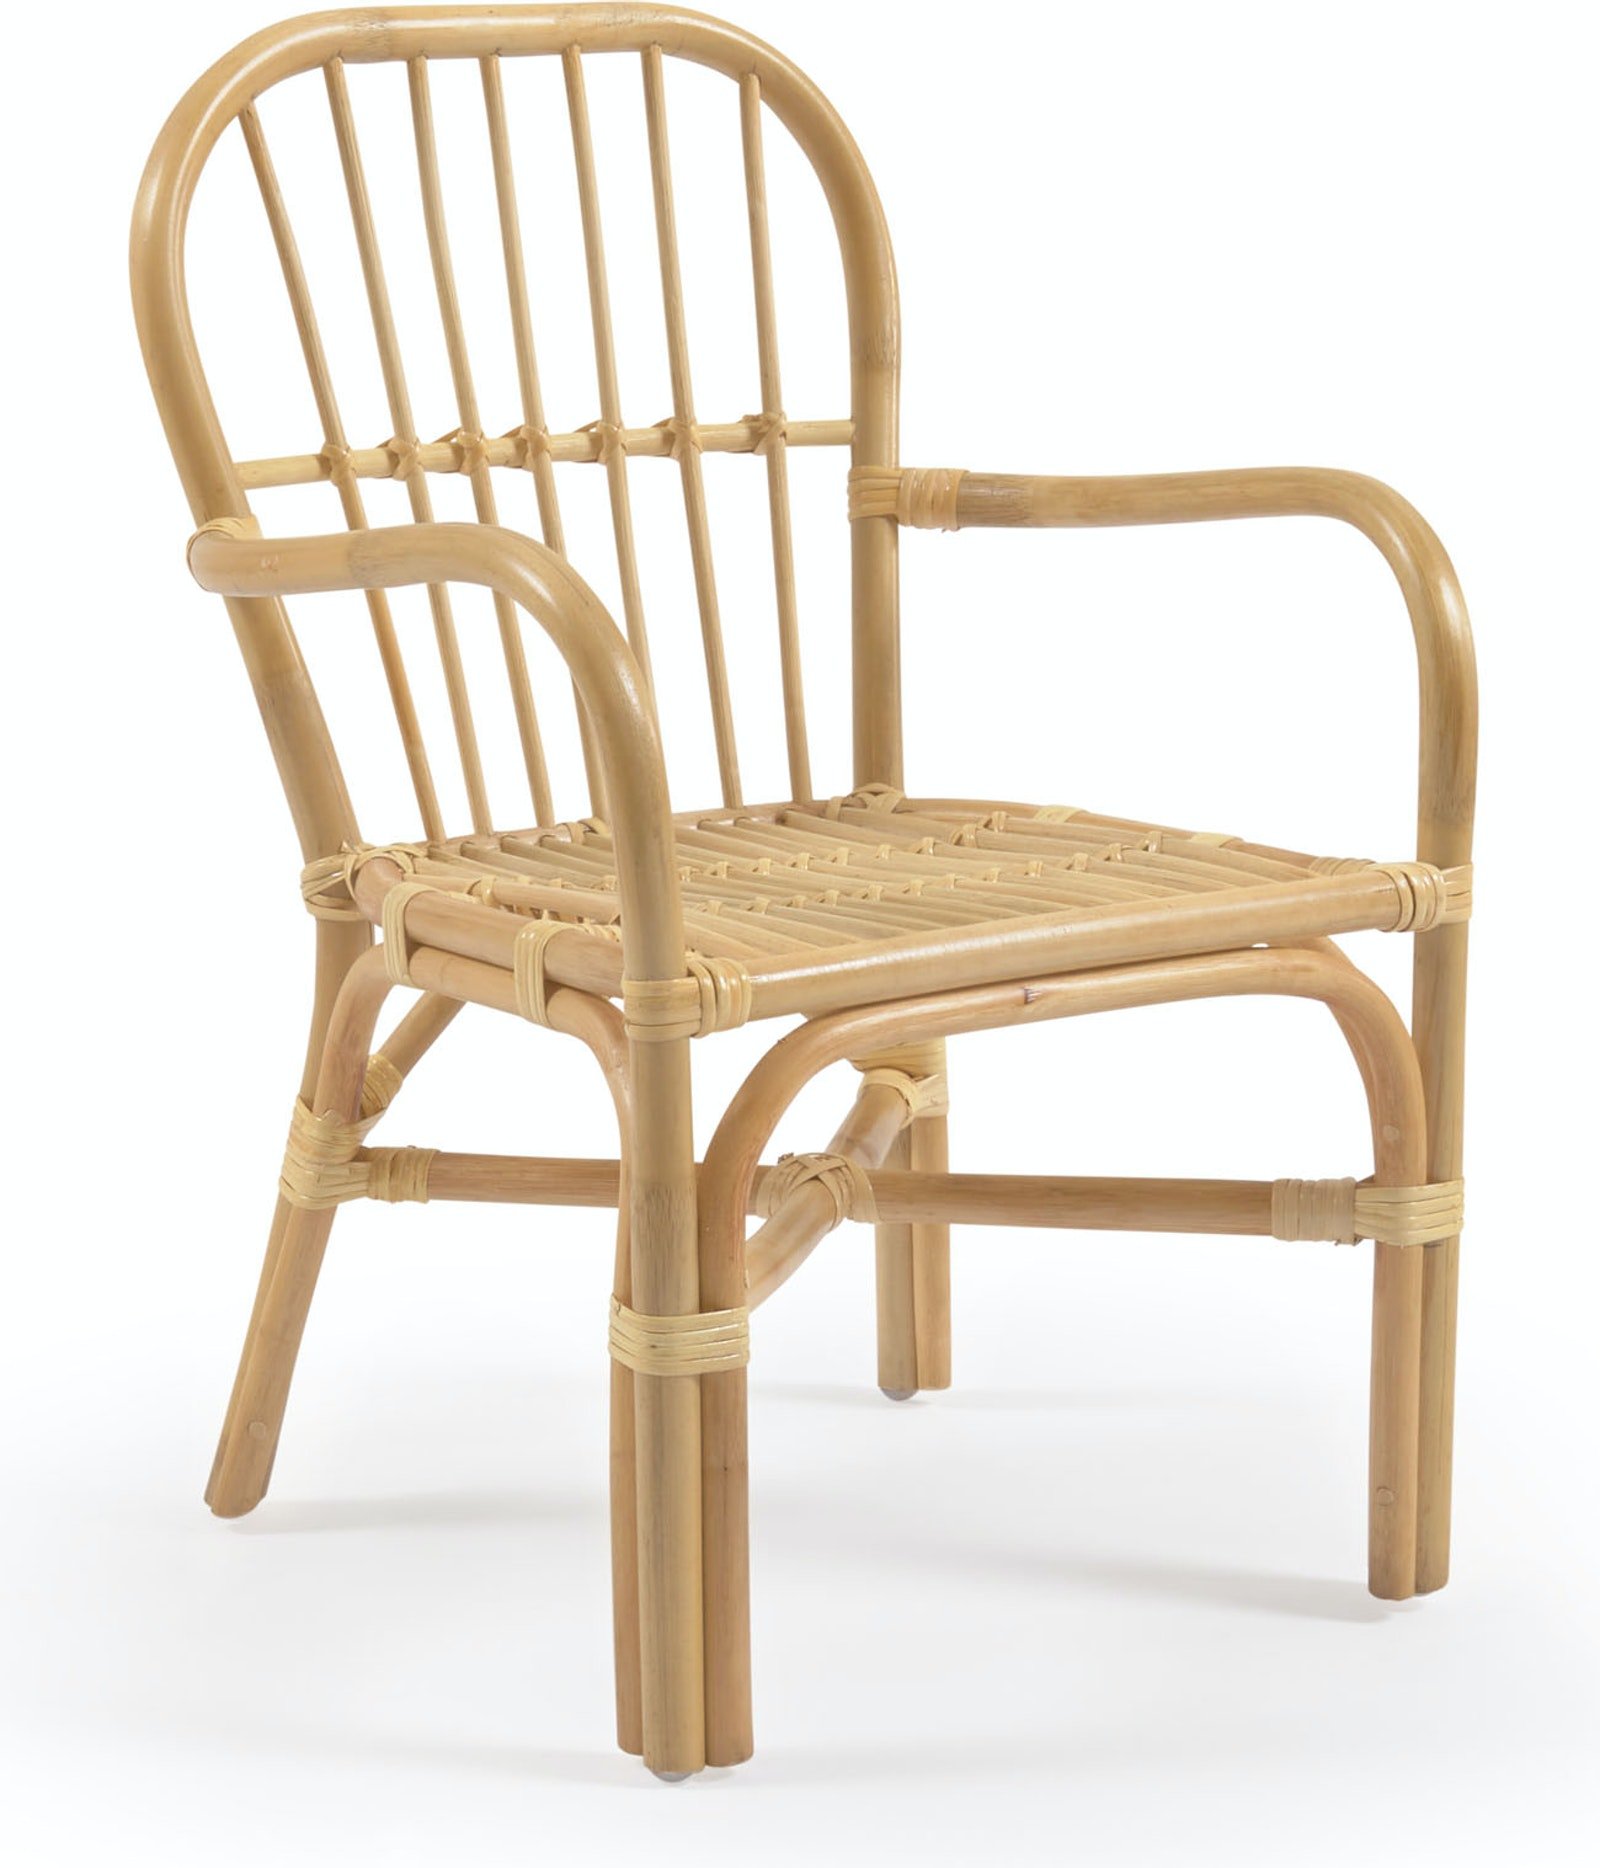 8: Marzieh, Børne stol, colonial, vintage, naturlige fibre by Kave Home (H: 63 cm. B: 40 cm. L: 42 cm., Natur)